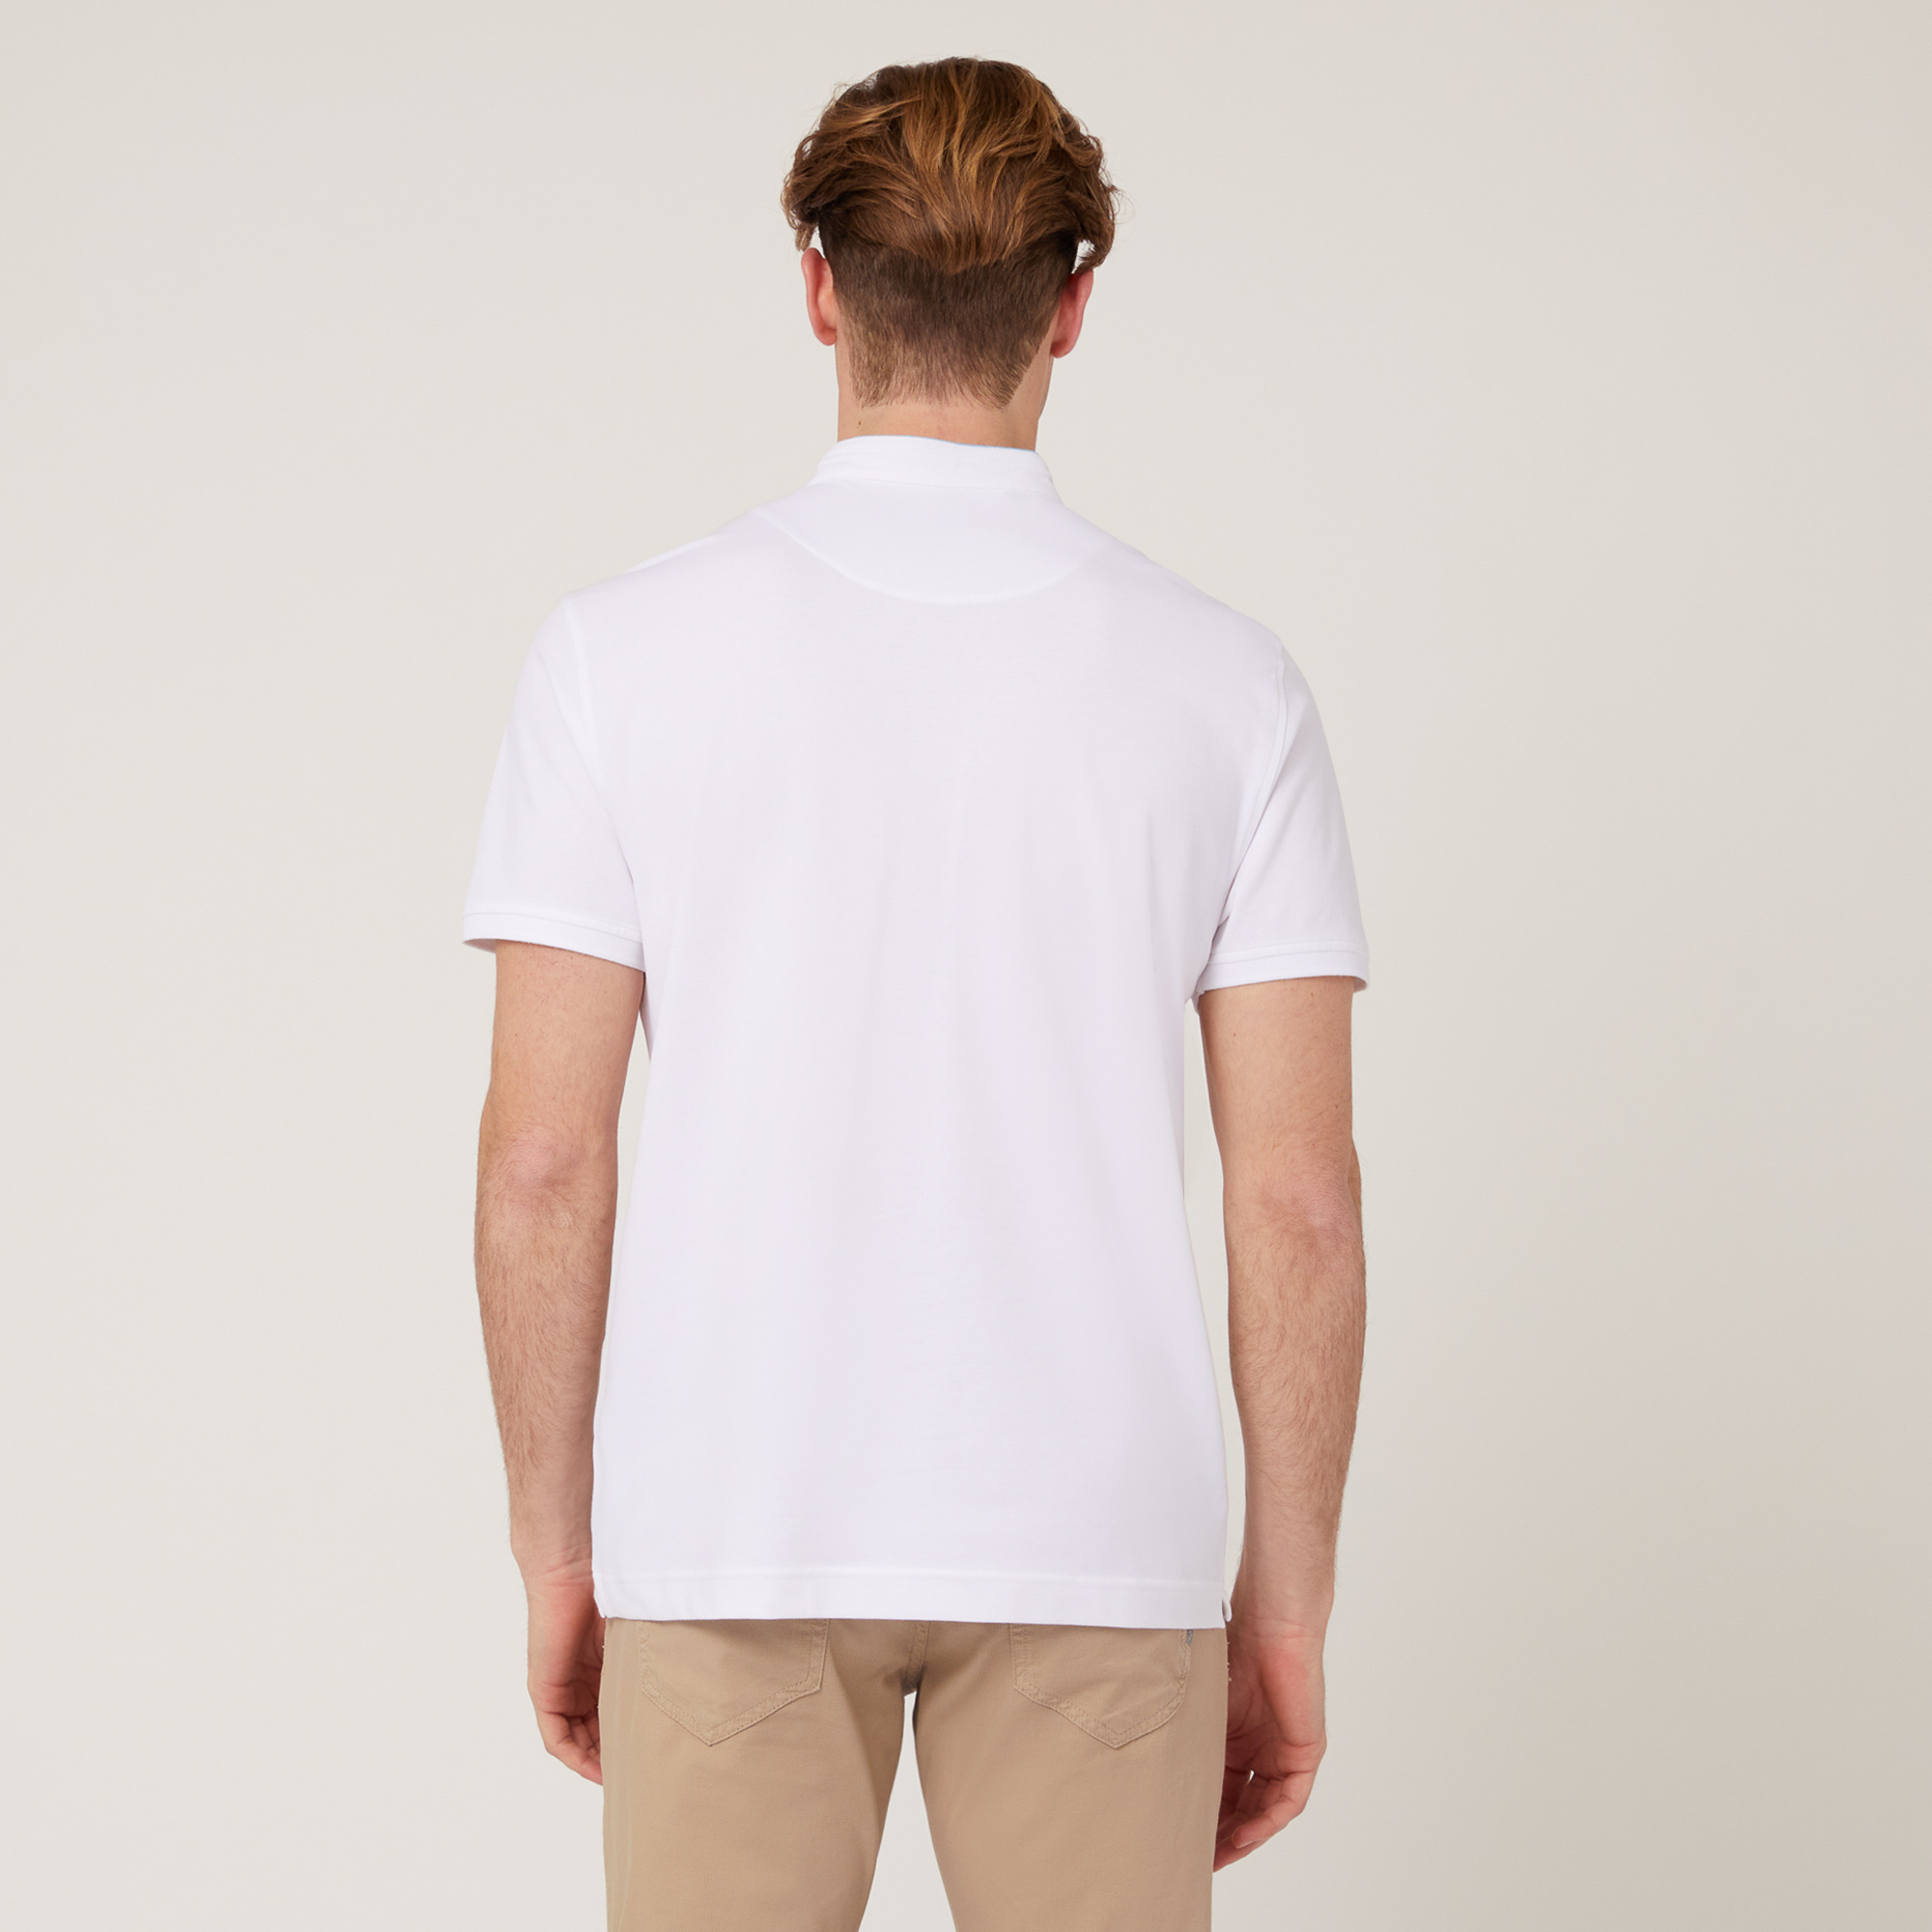 Poloshirt mit Stehkragen, Weiß, large image number 1